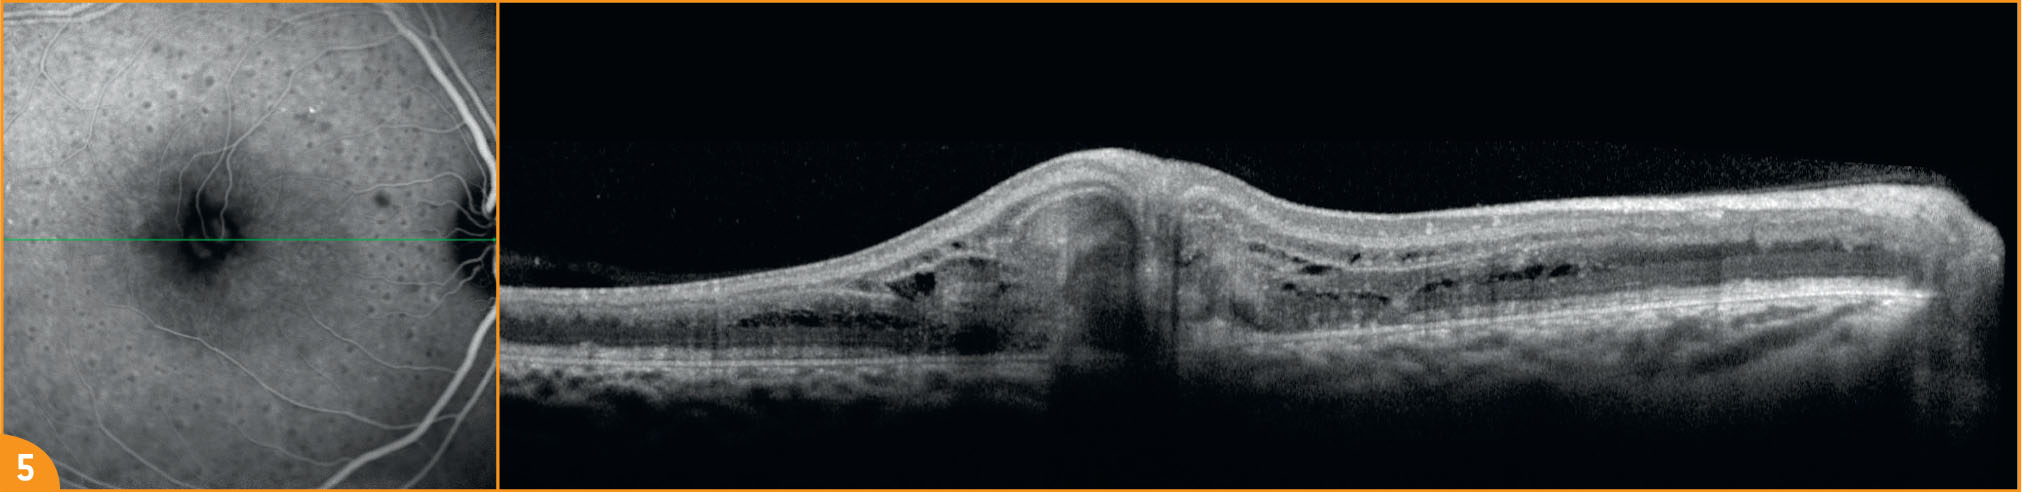 Une anastomose rétino-rétinienne chez un jeune garçon de 10 ans - Figure 5